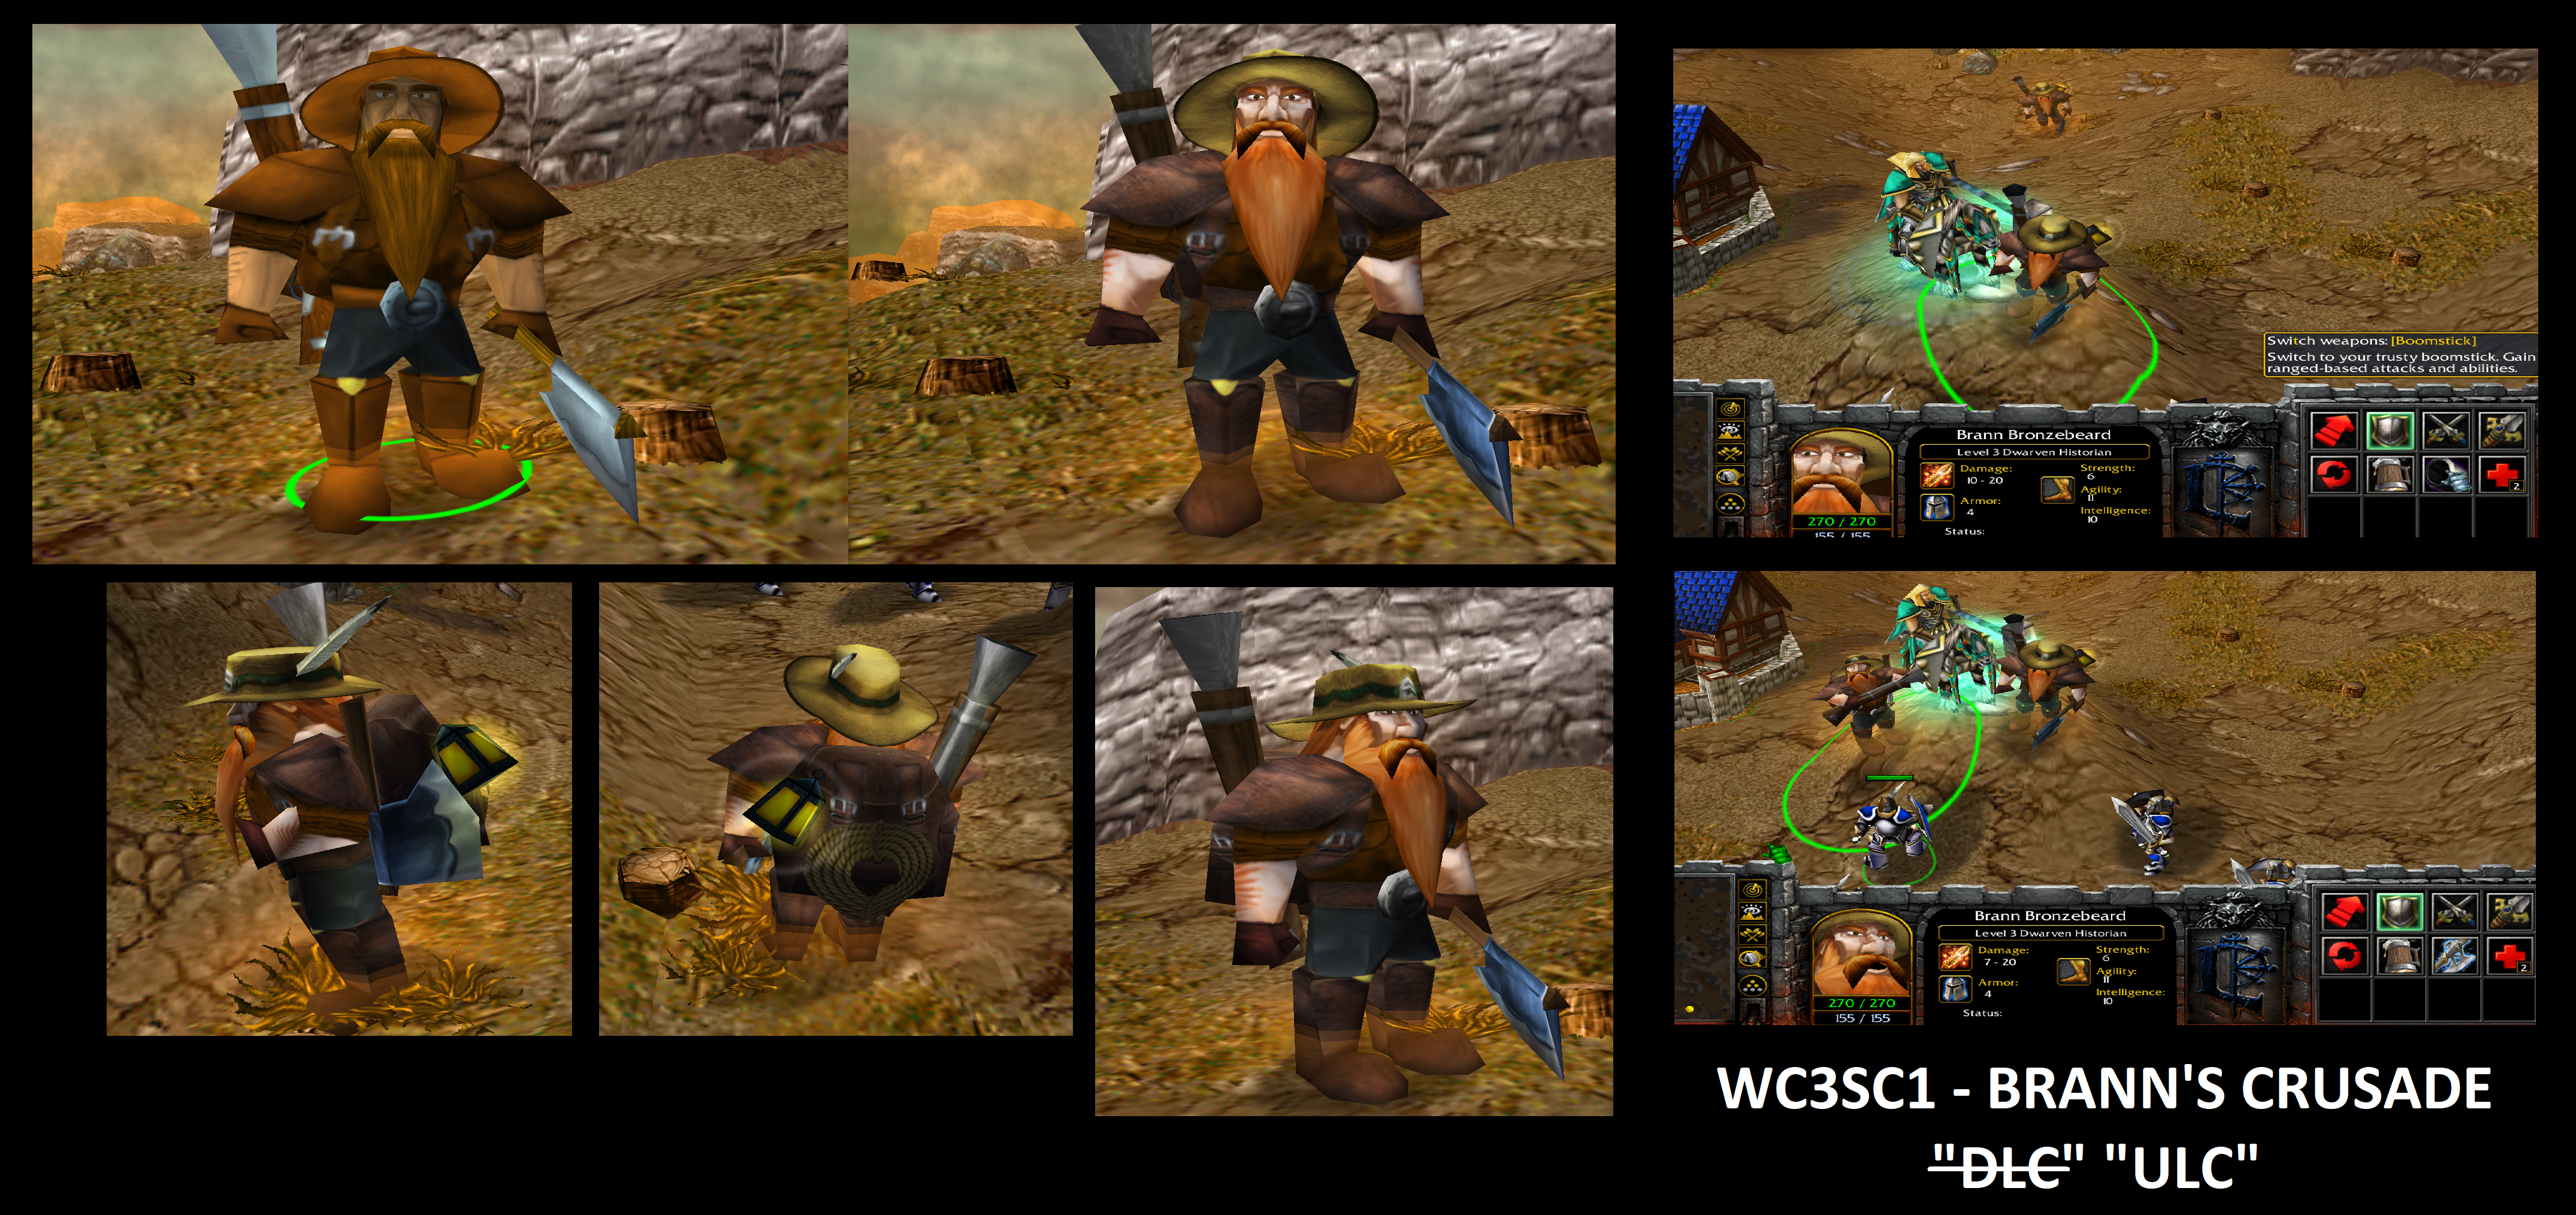 WC3SC1 - Brann Bronzebeard's Crusade